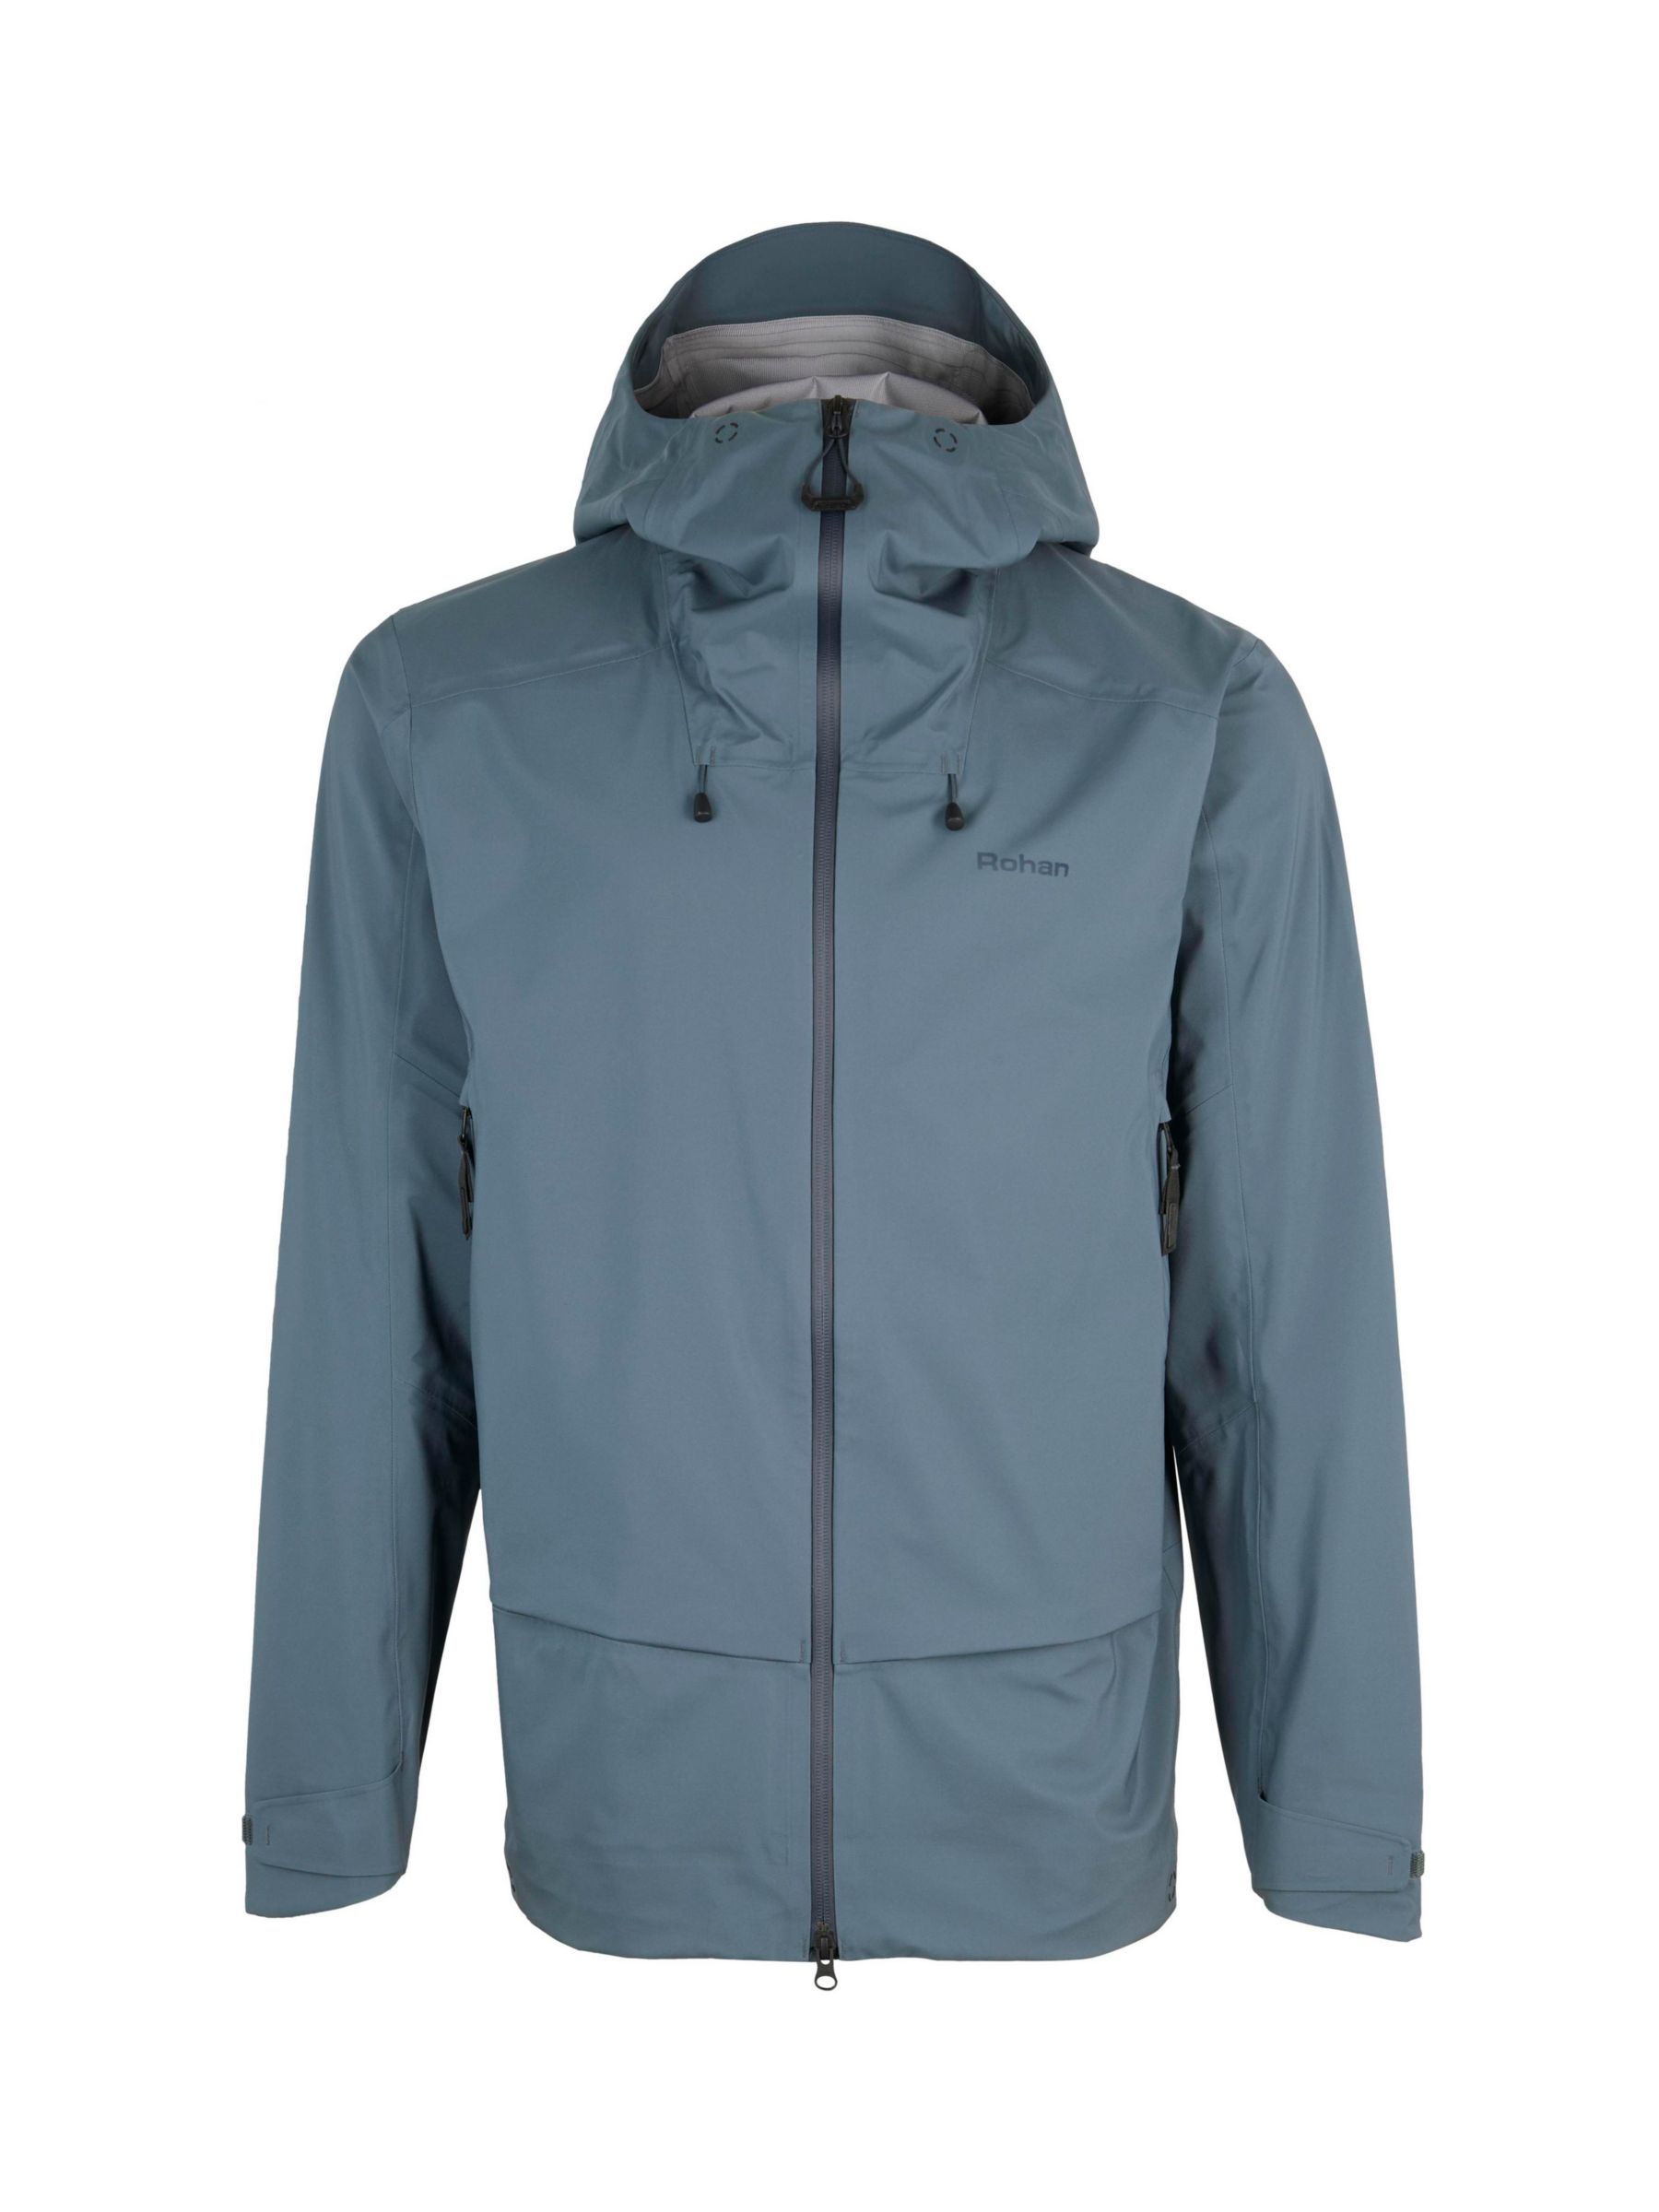 Rohan Ventus Men's Waterproof Jacket, Slate Grey, S